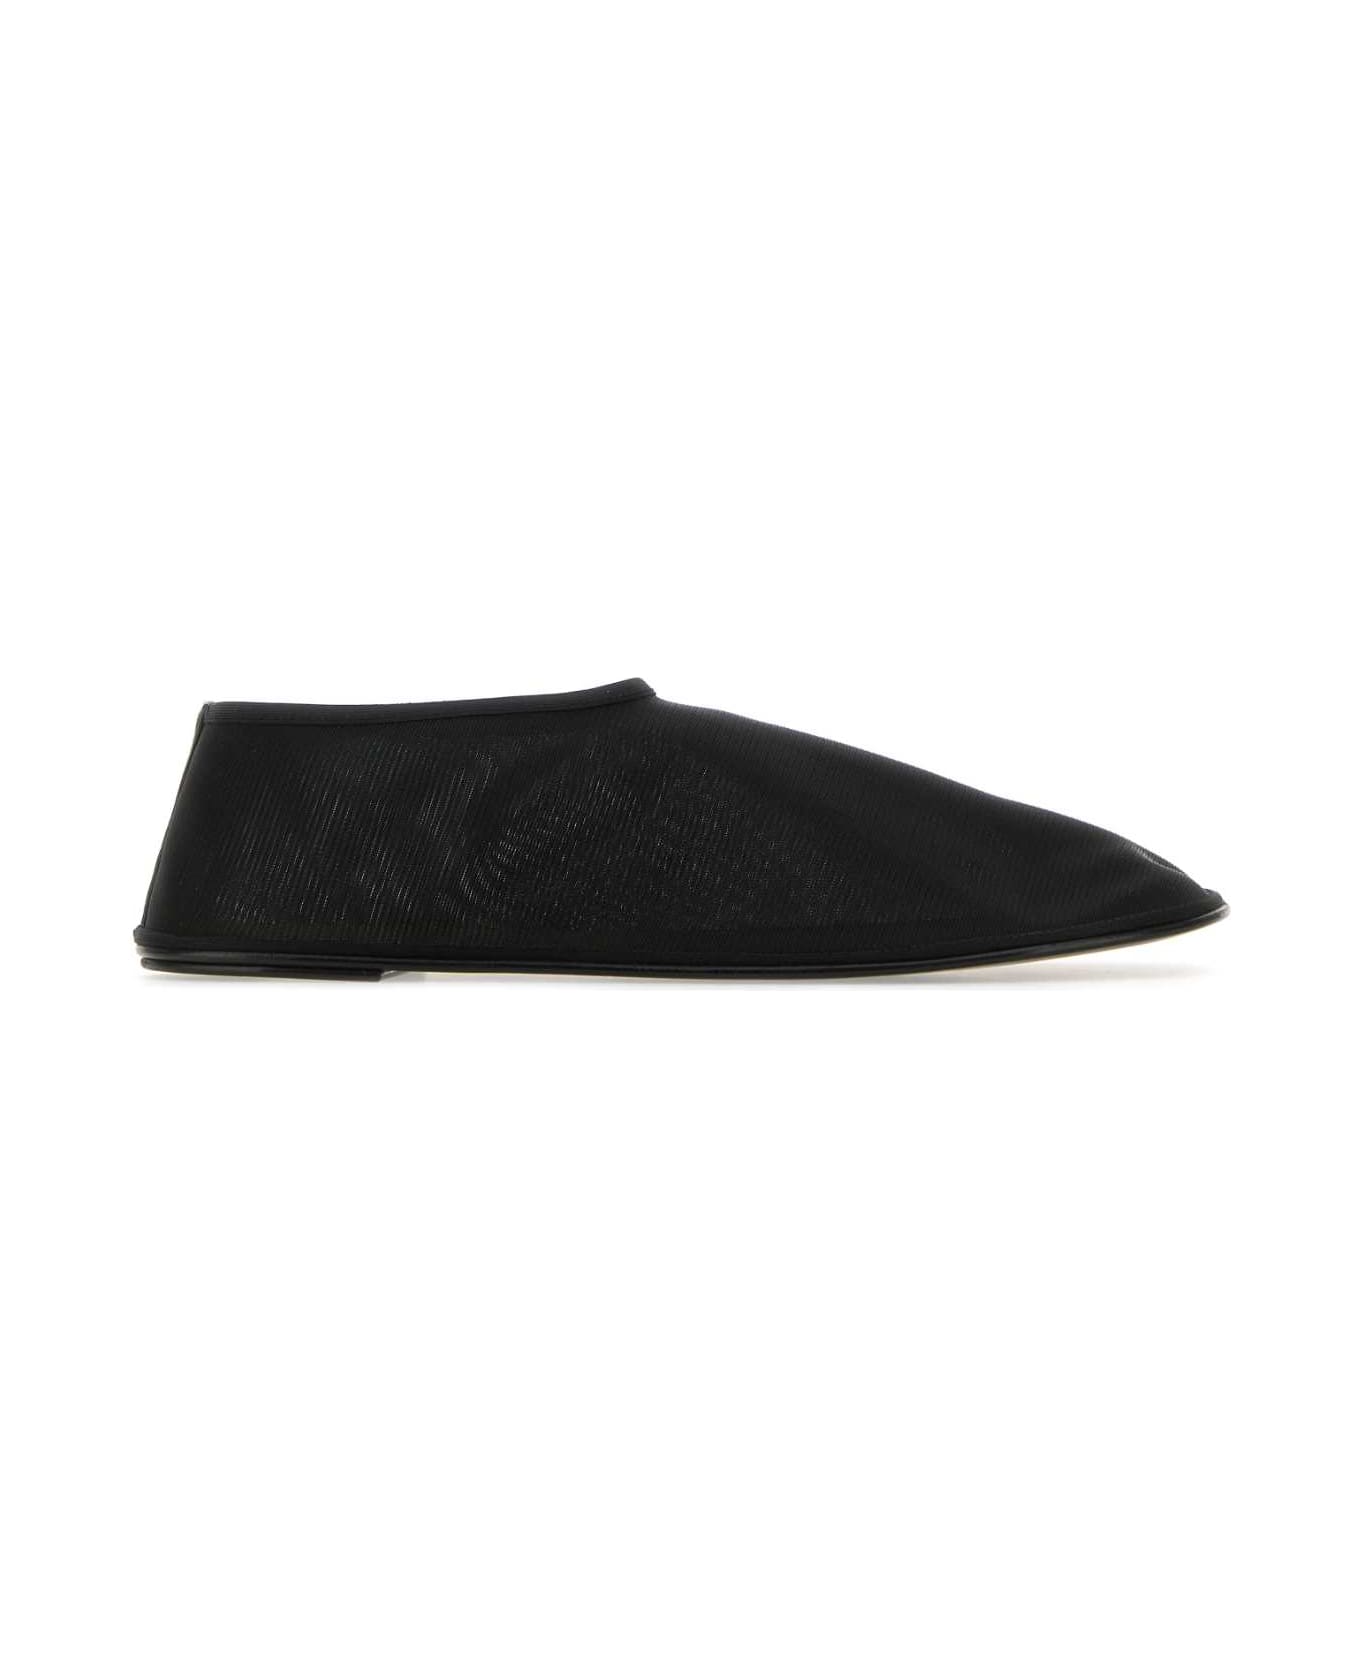 The Row Black Nylon Socks Slip Ons - Black フラットシューズ